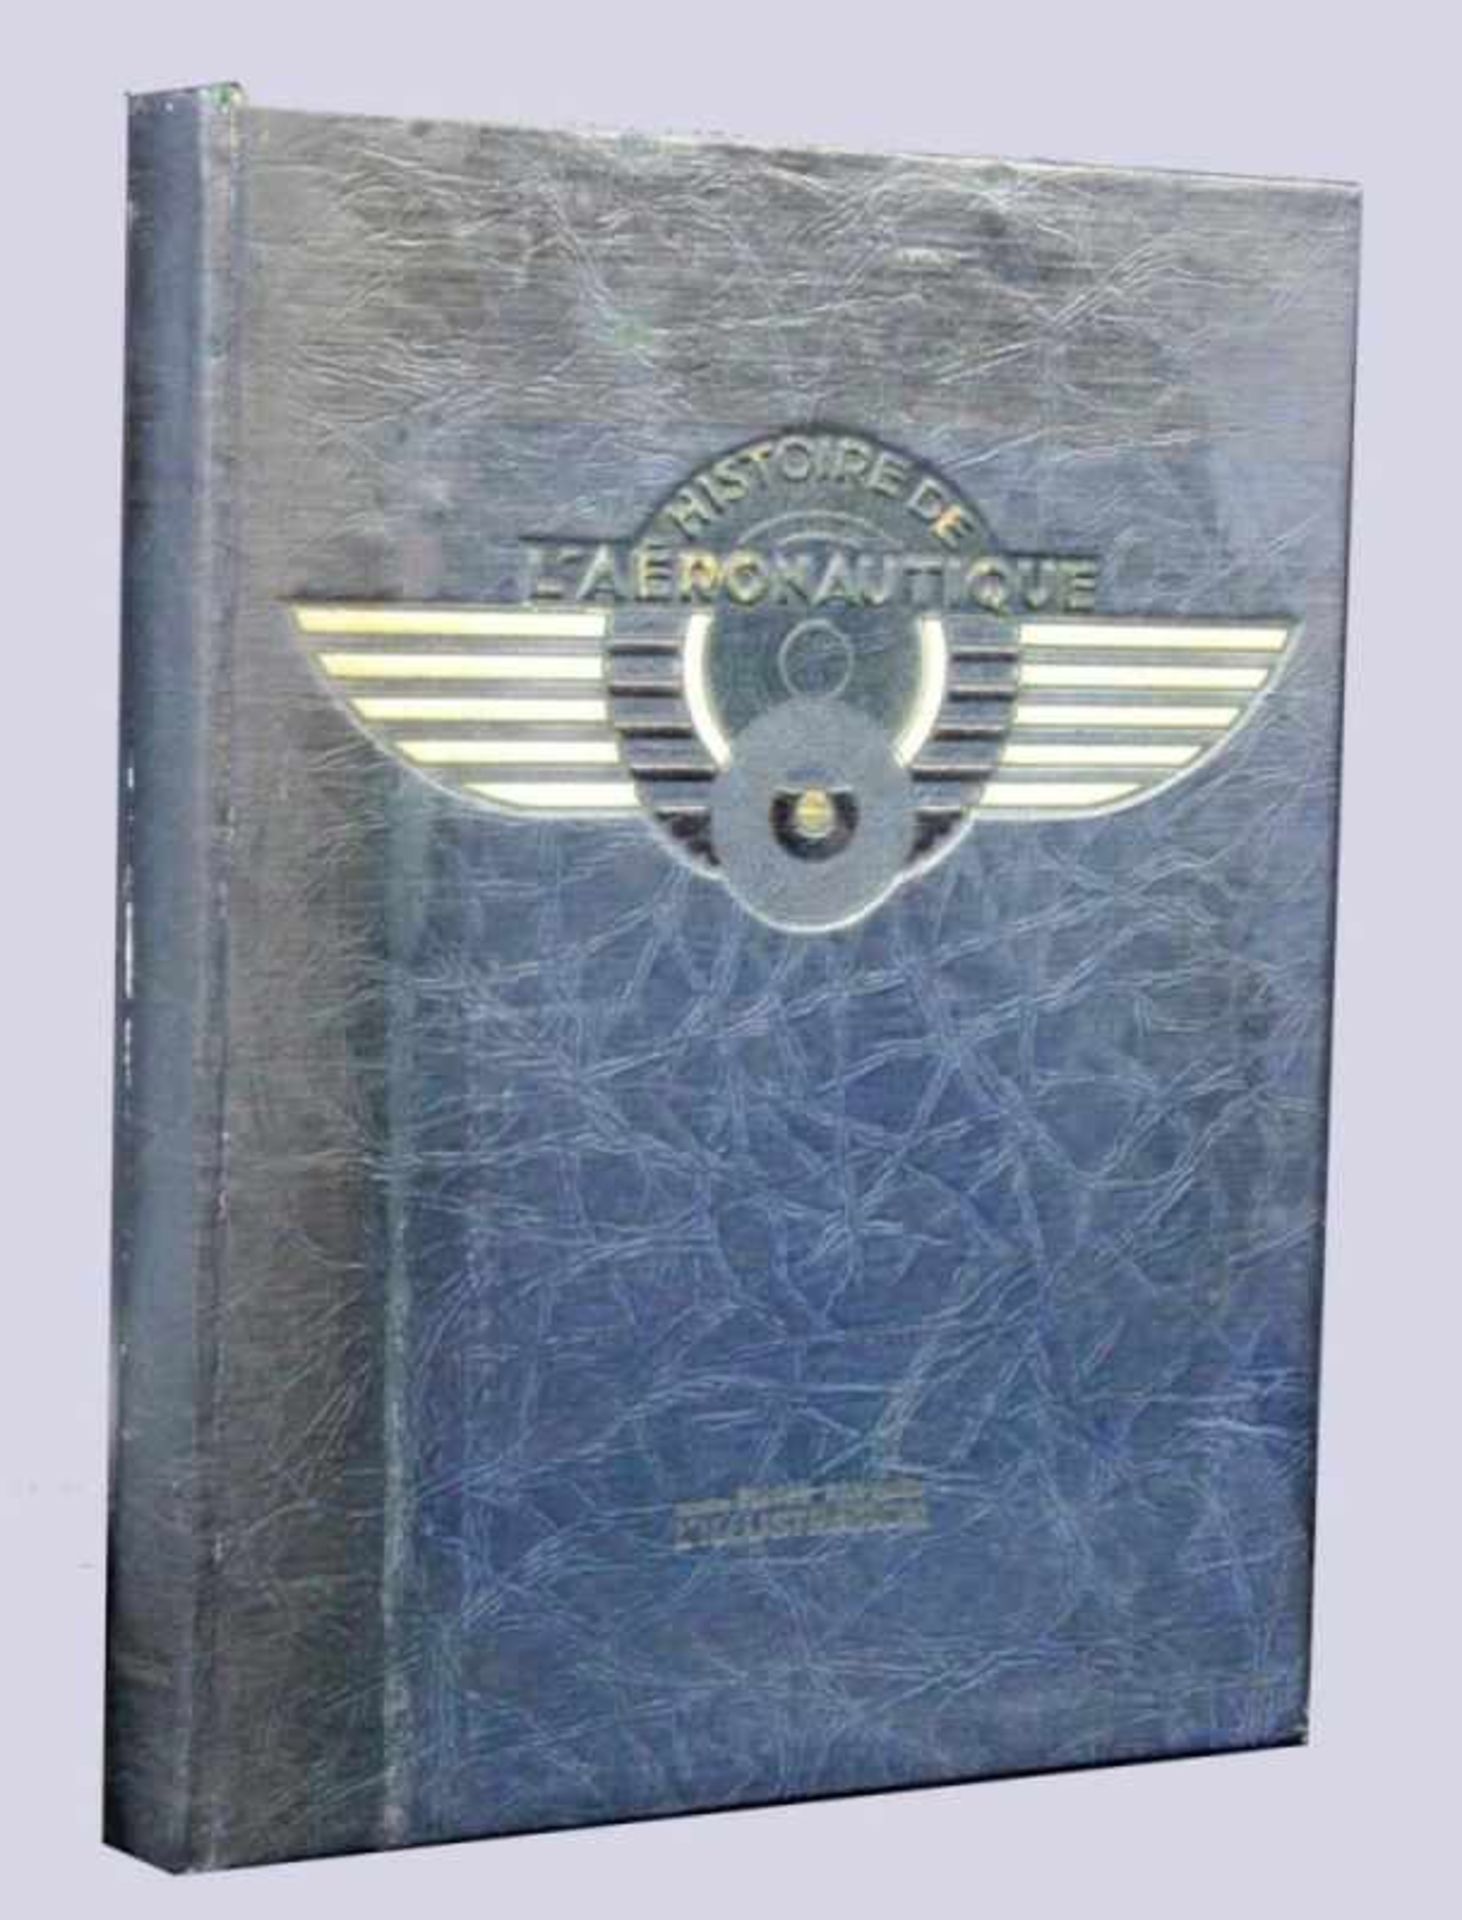 L'HISTOIRE DE L'AERONAUTIQUE Paris 1932 Lexicon on aviation history. With numerous - Bild 2 aus 2